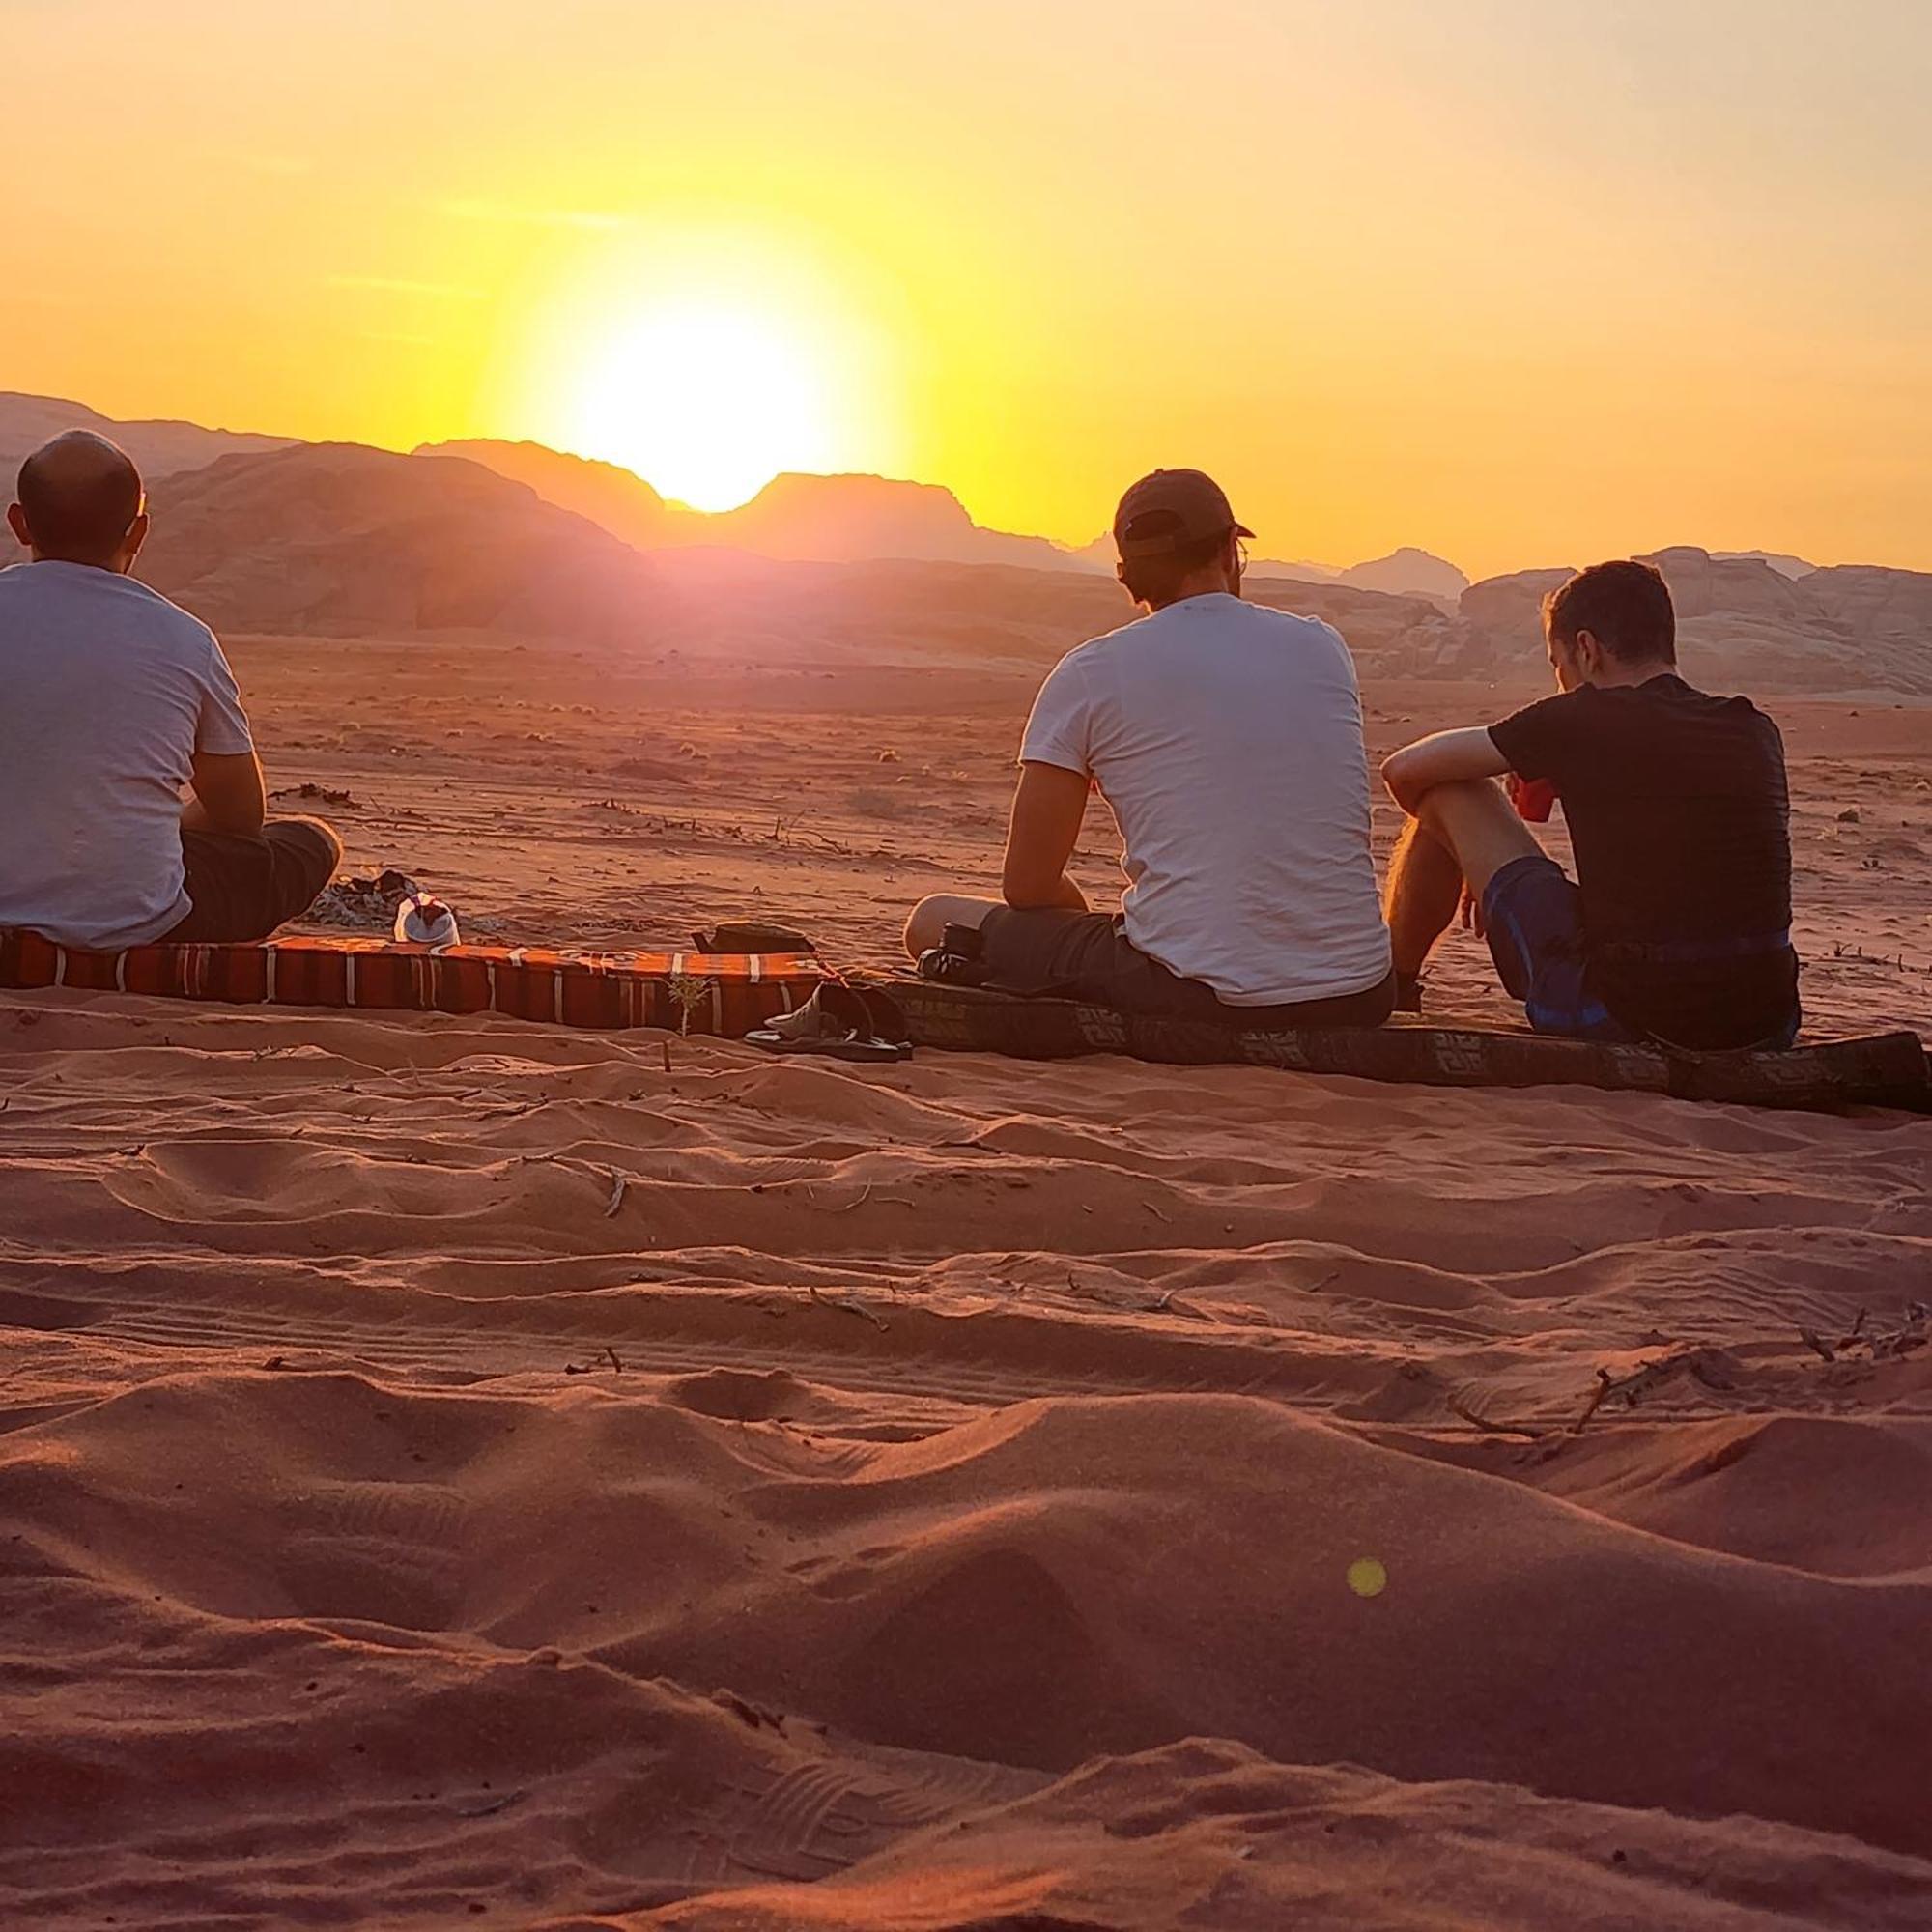 Desert Dream Camp Wadi Rum Zewnętrze zdjęcie